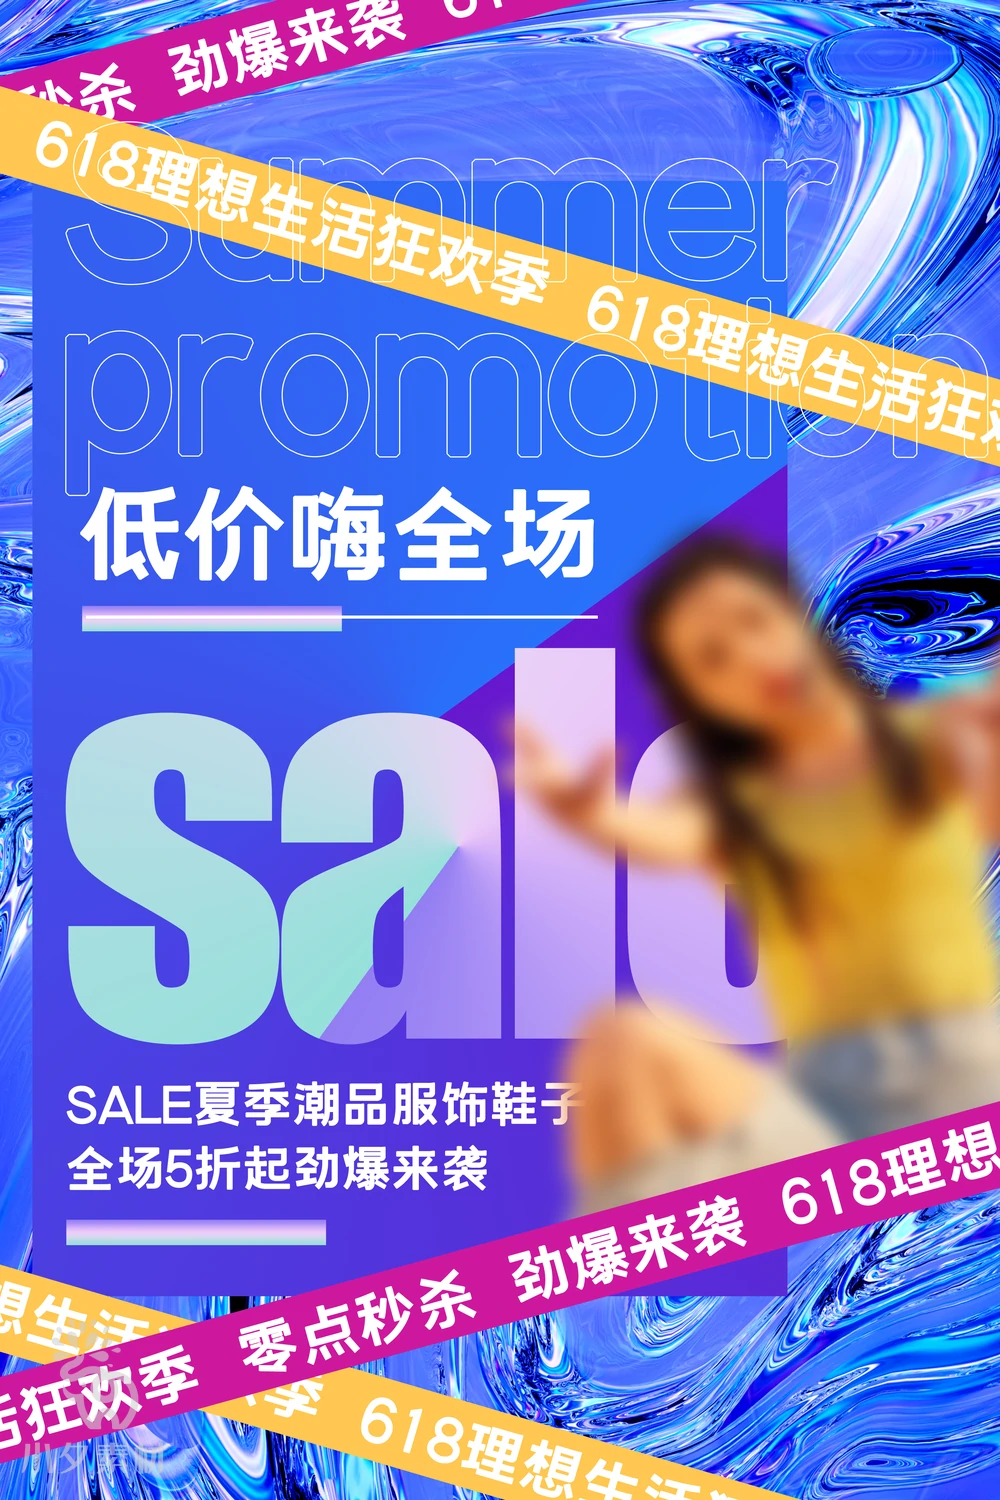 电商折扣促销618大促直播宣传海报模板PSD分层设计素材【008】